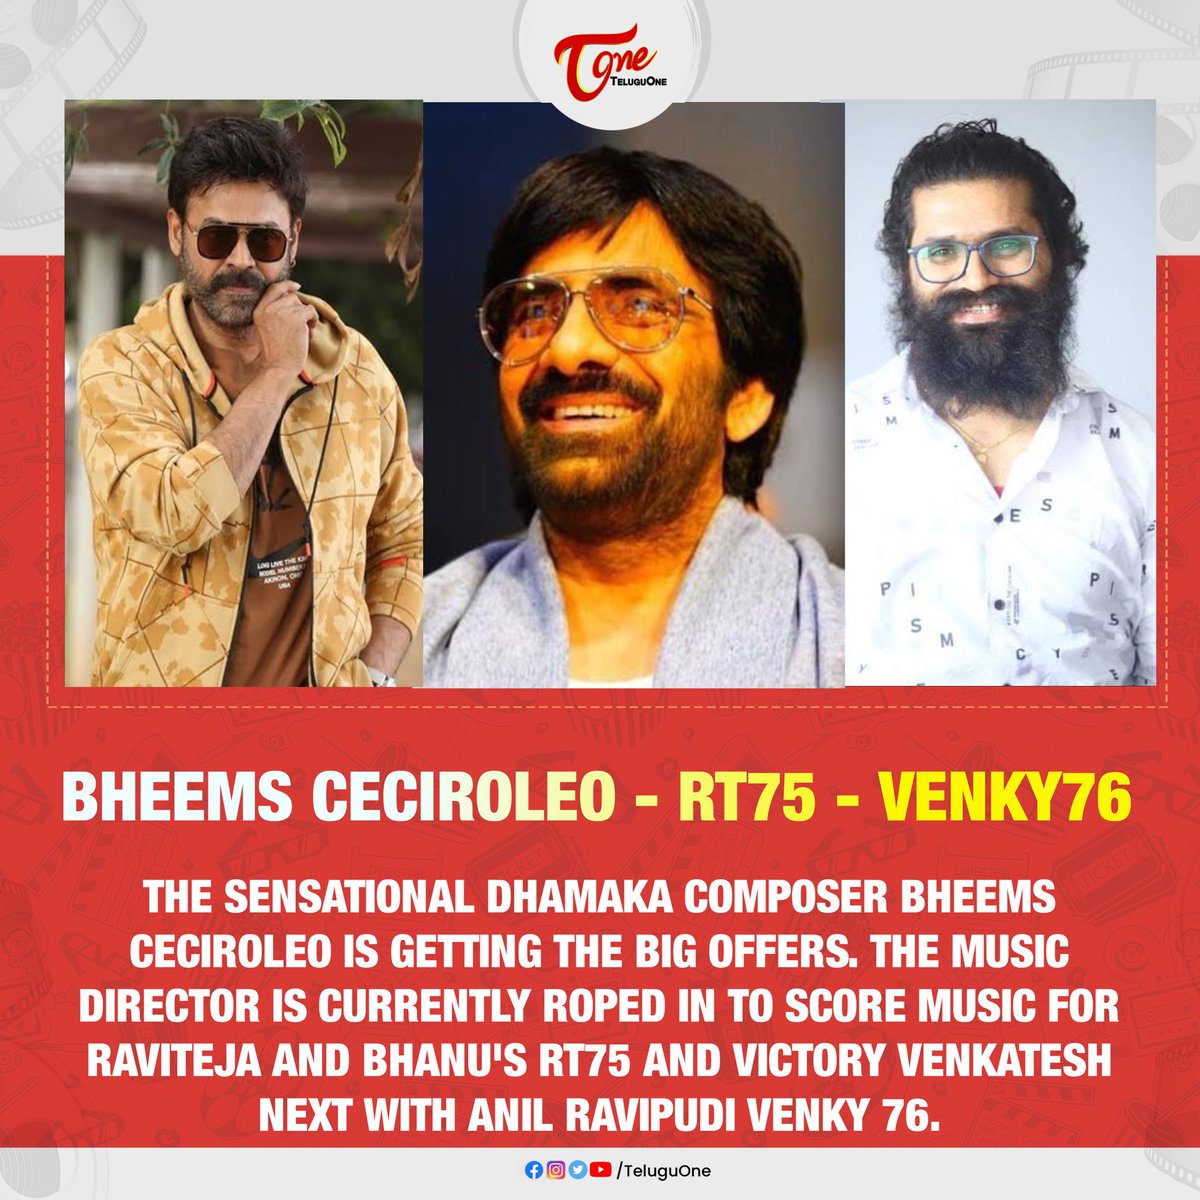 #Venky76 - #RT75 - #BheemsCeciroleo 

#Raviteja #Venkatesh #Dhamaka #AnilRavipudi #BhanuBogavarapu